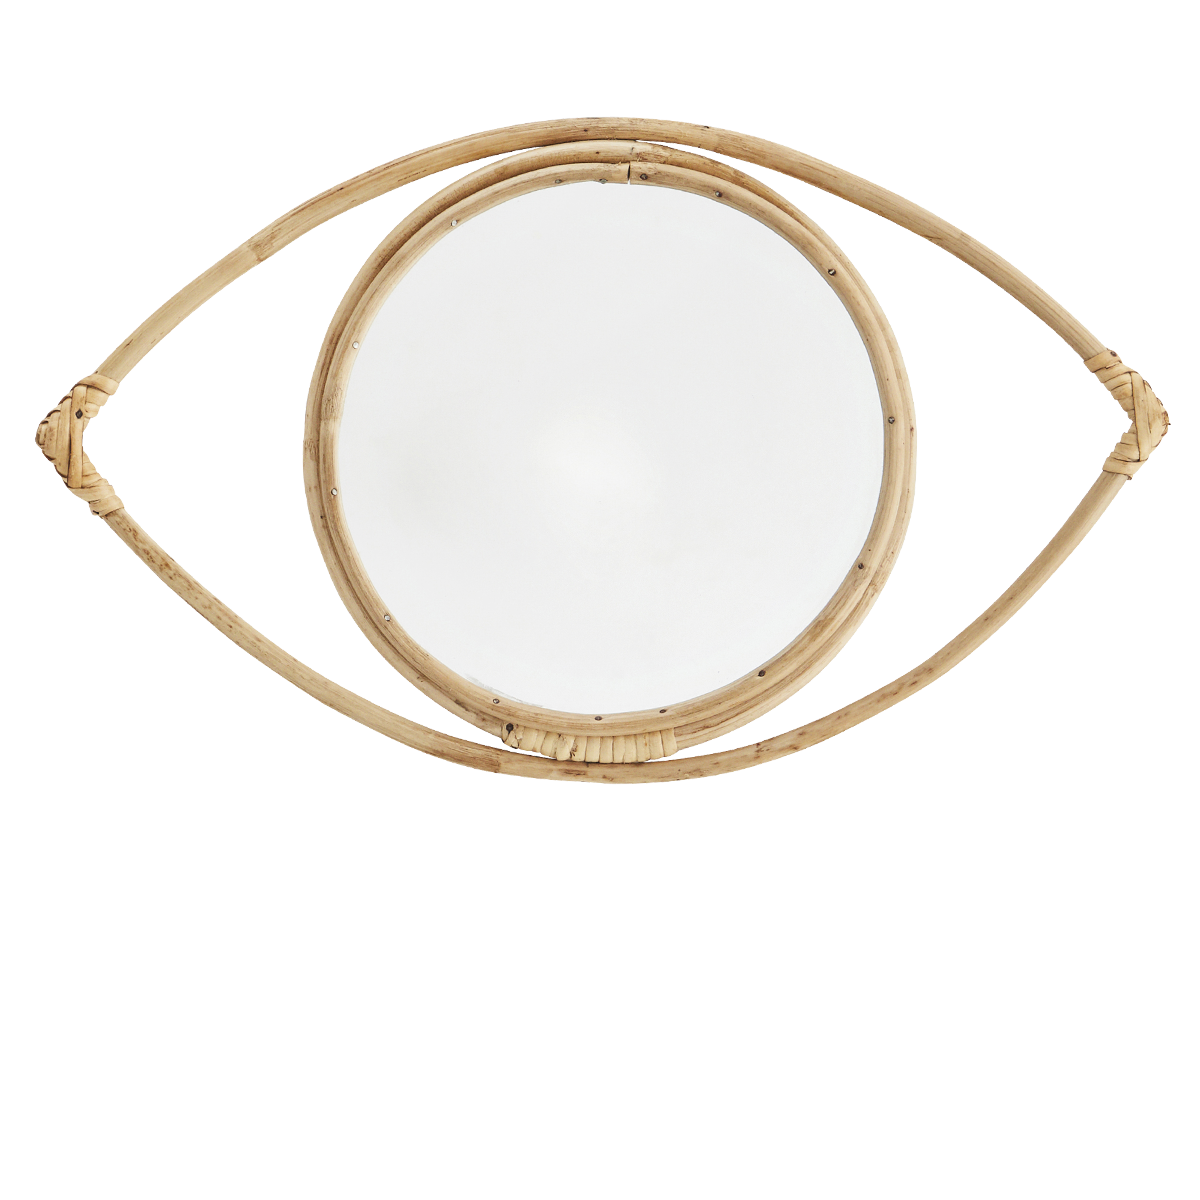 Hanging eye mirror w/ bamboo